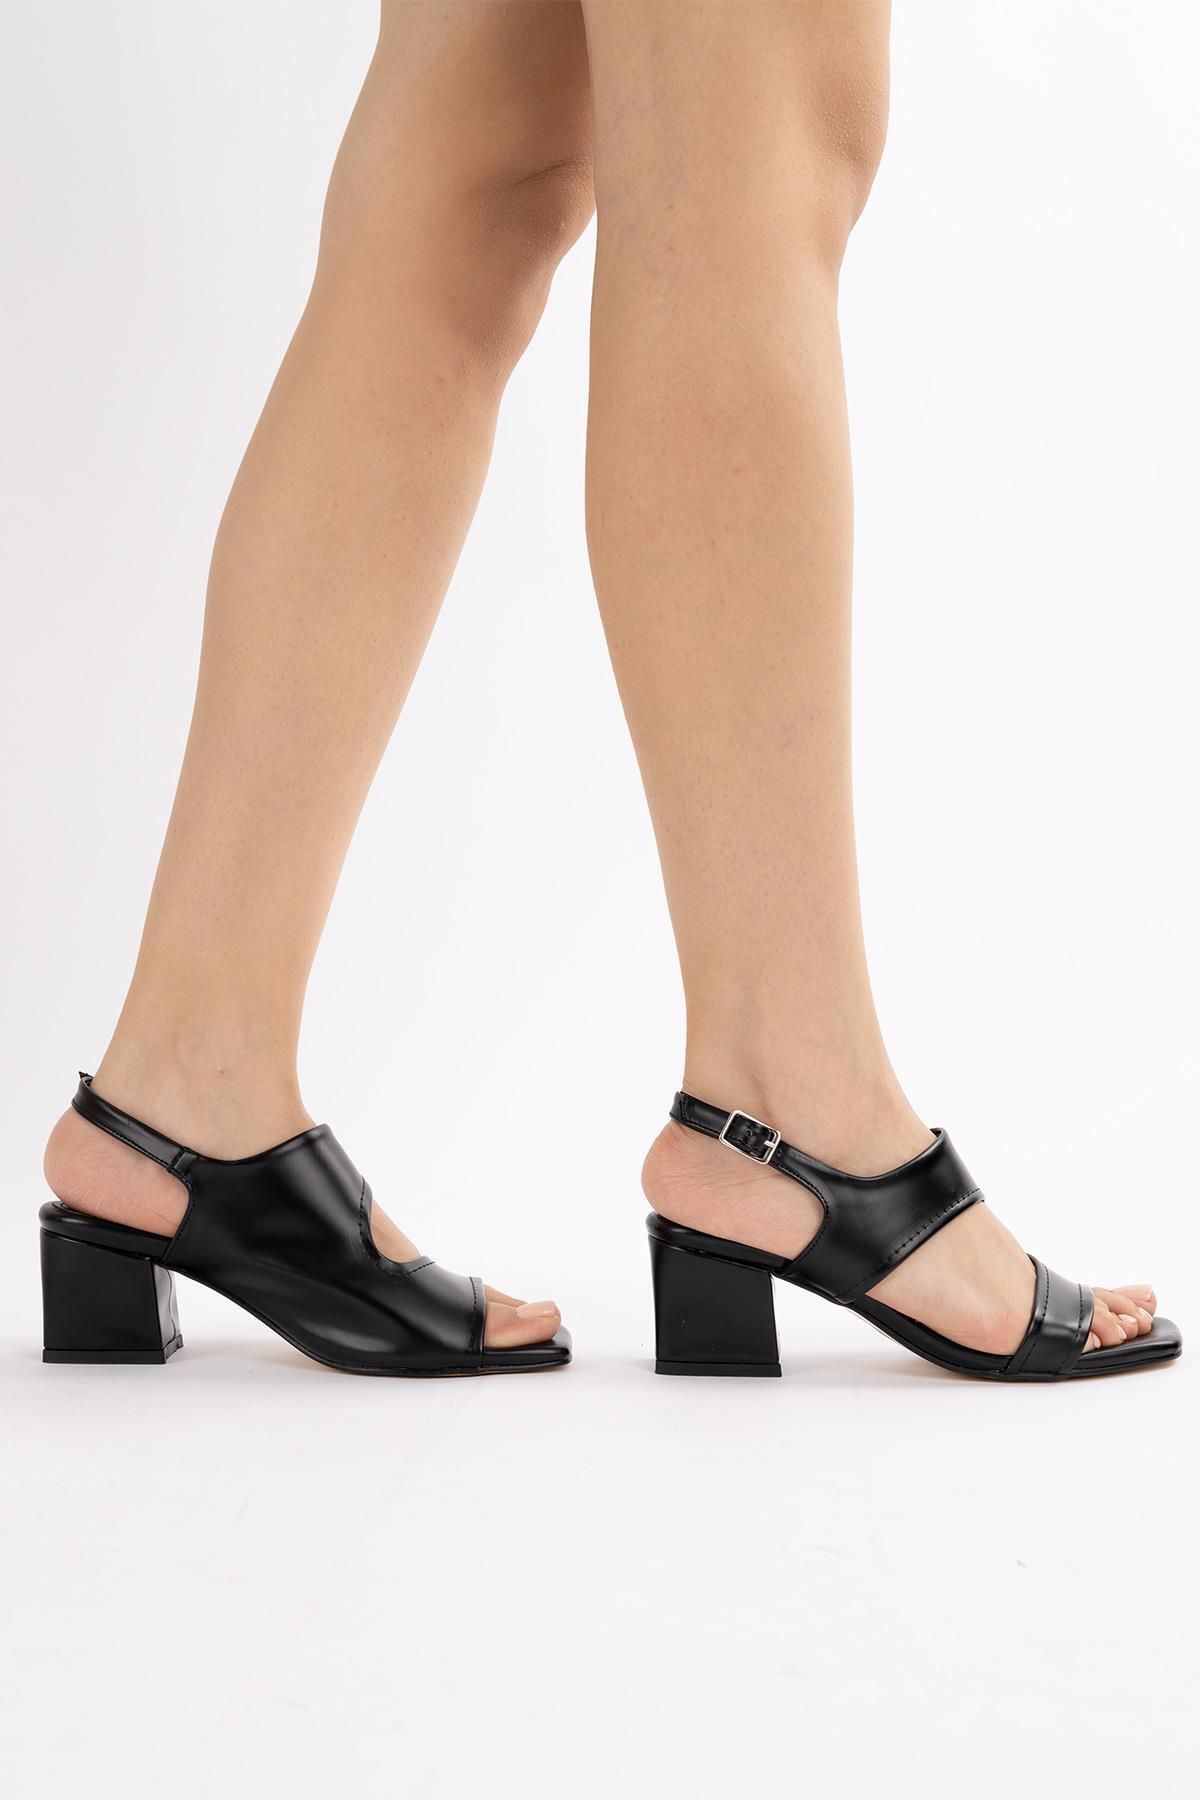 Getcho Ranma Kadın Siyah Kalın Topuk Ayakkabı